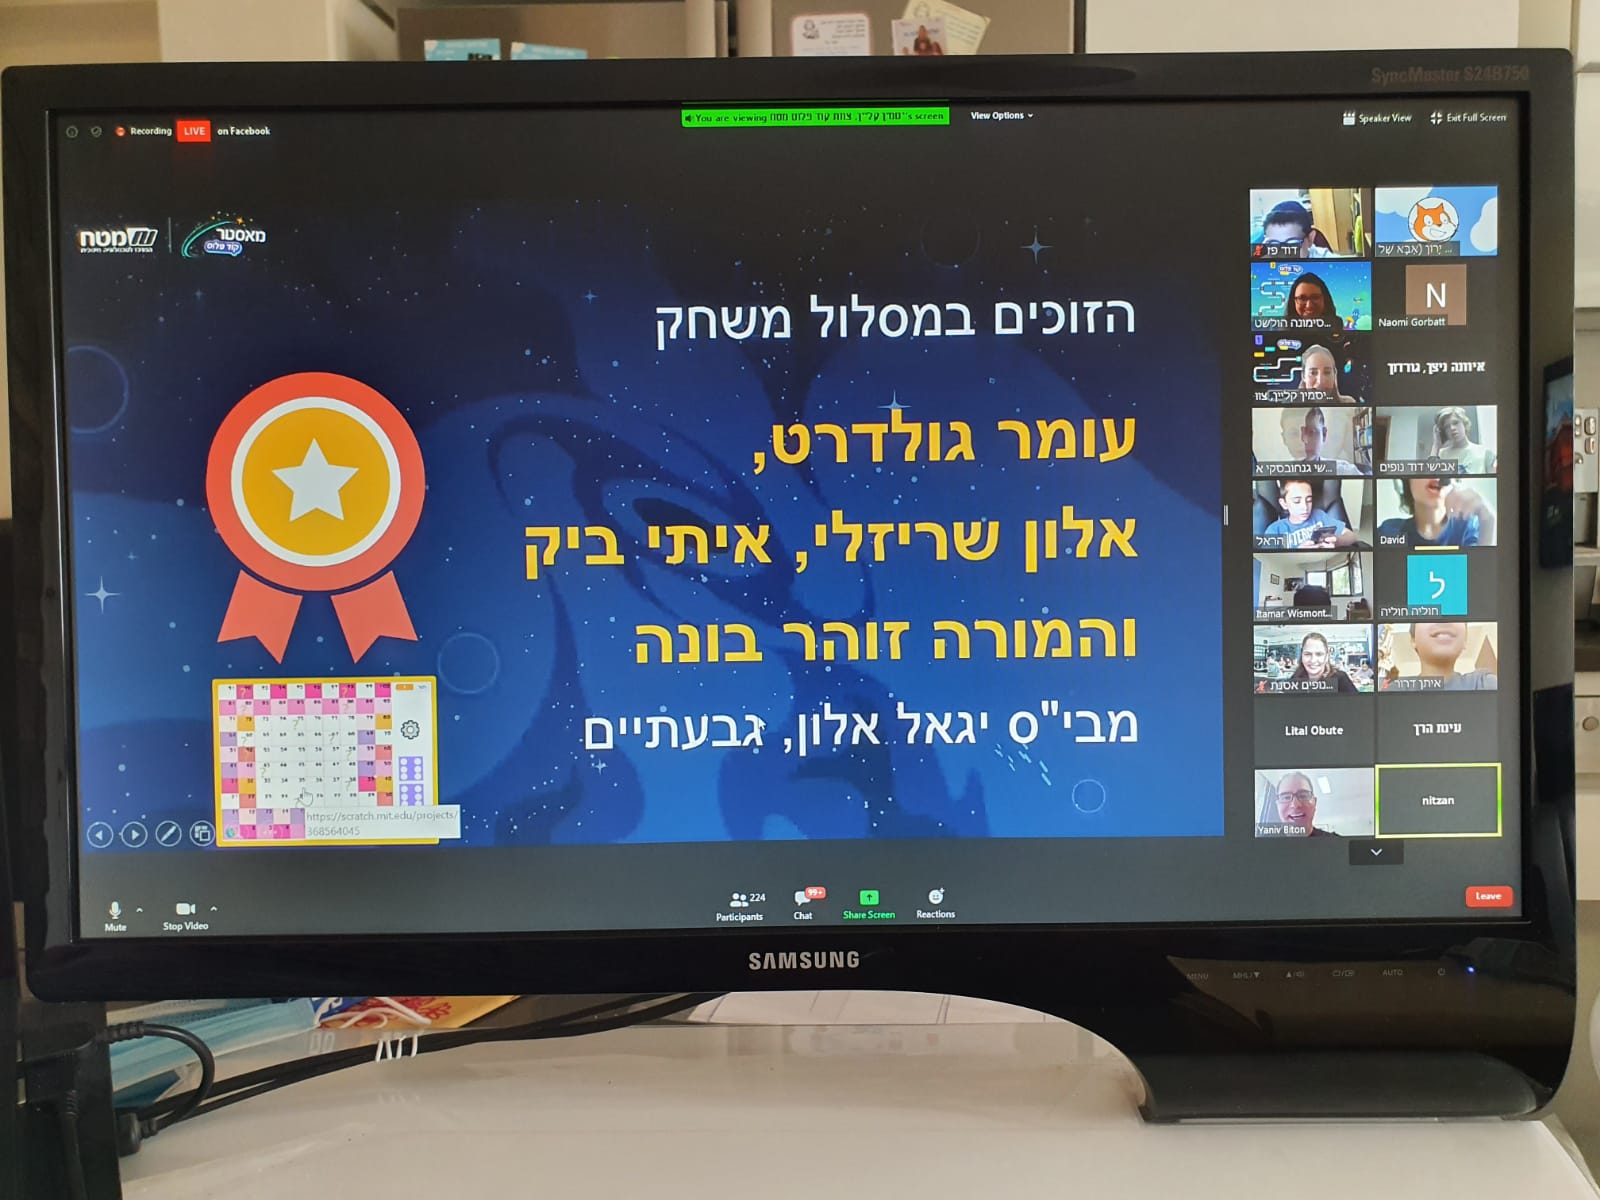 תלמיד בית ספר אלון מגבעתיים זכו במקום הראשון  בקטגוריית המשחק בתחרות "מאסטר קוד פלוס"